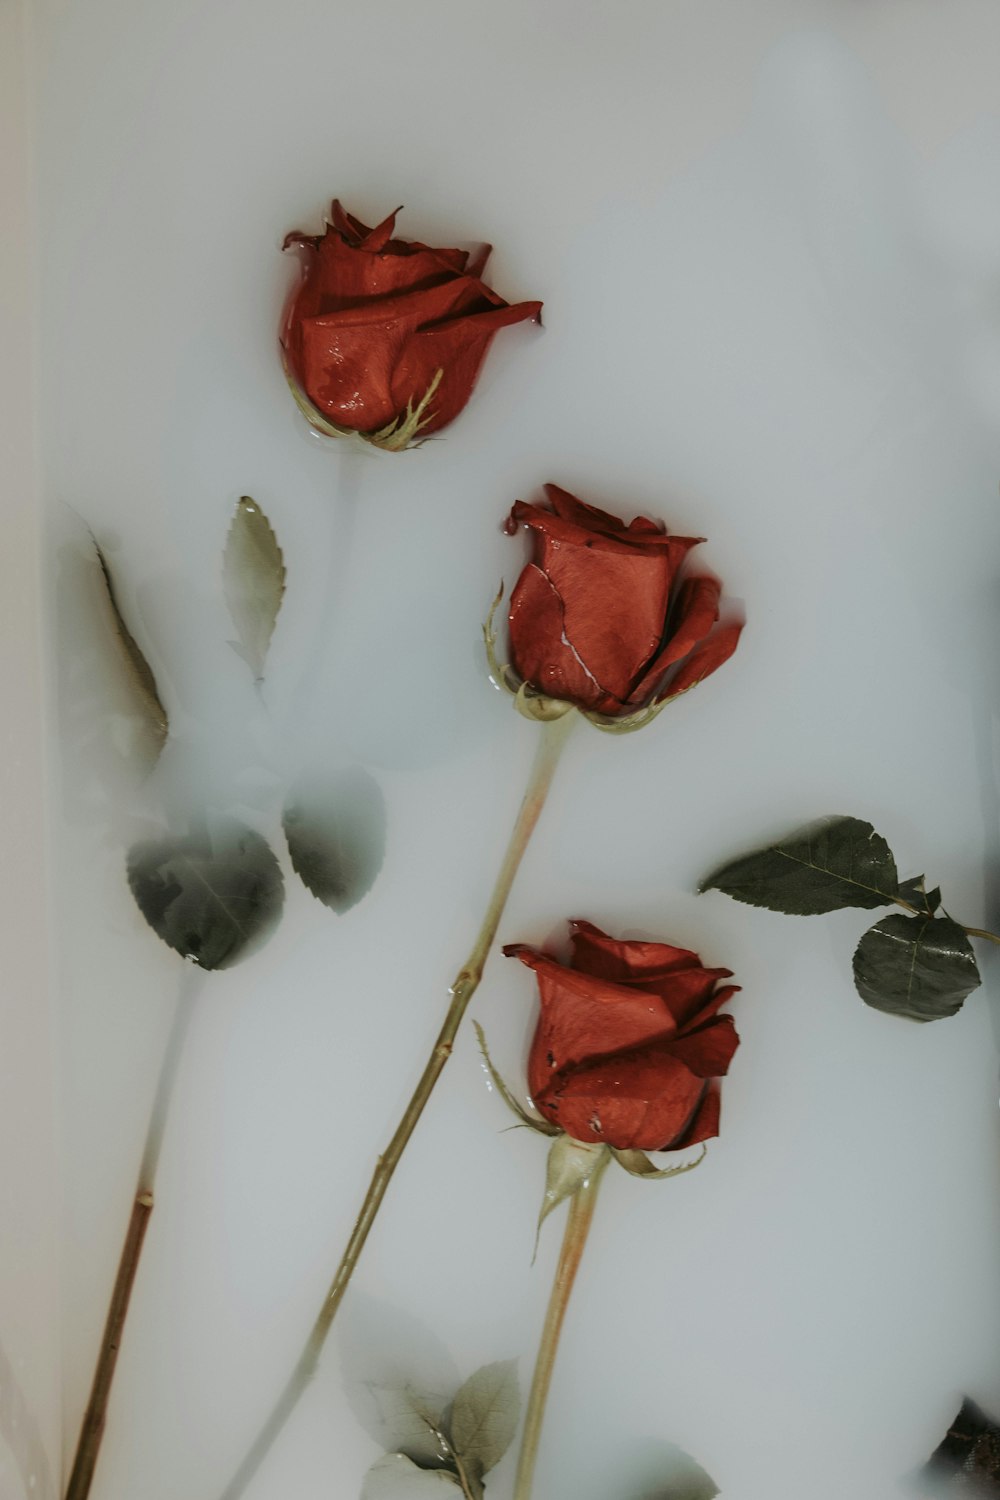 흰색 패널에 세 개의 빨간 장미